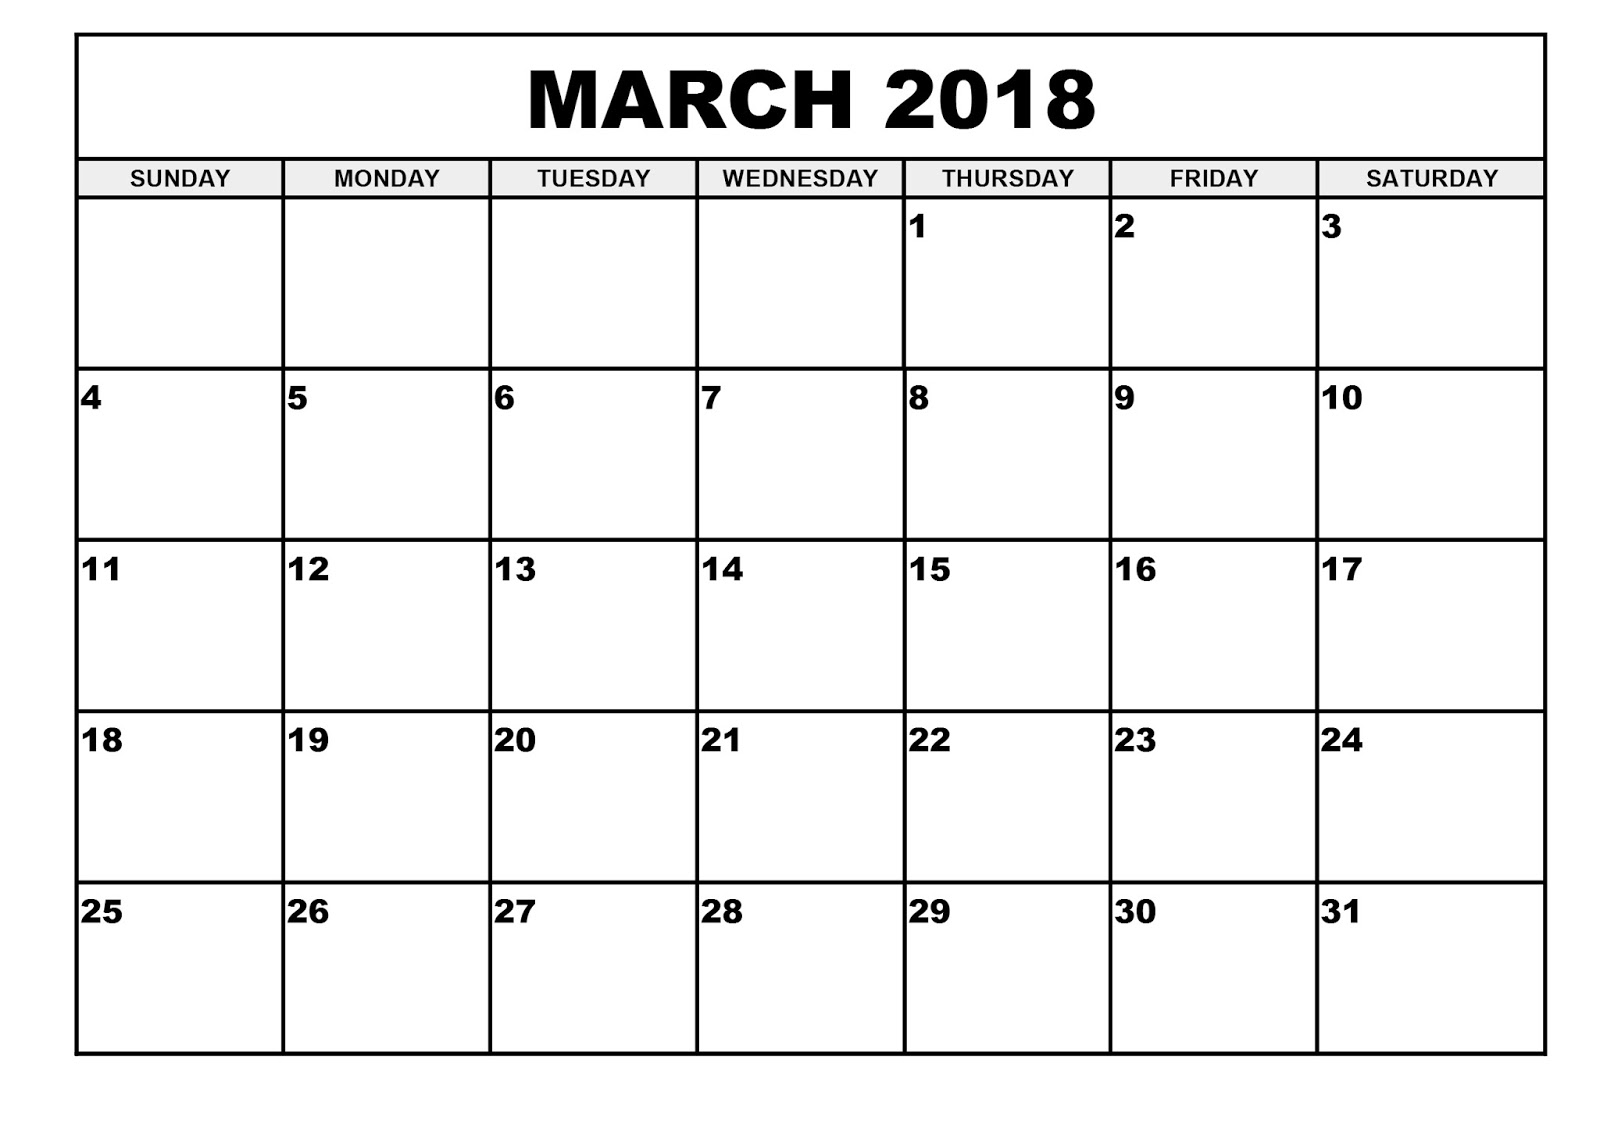 March 2018 Calendar Pdf March 2018 Calendar Pdf March 2018 Calendar Pdf March 2018 Calendar Sunday 01 Ugnlhr Heysjk Lerdgs